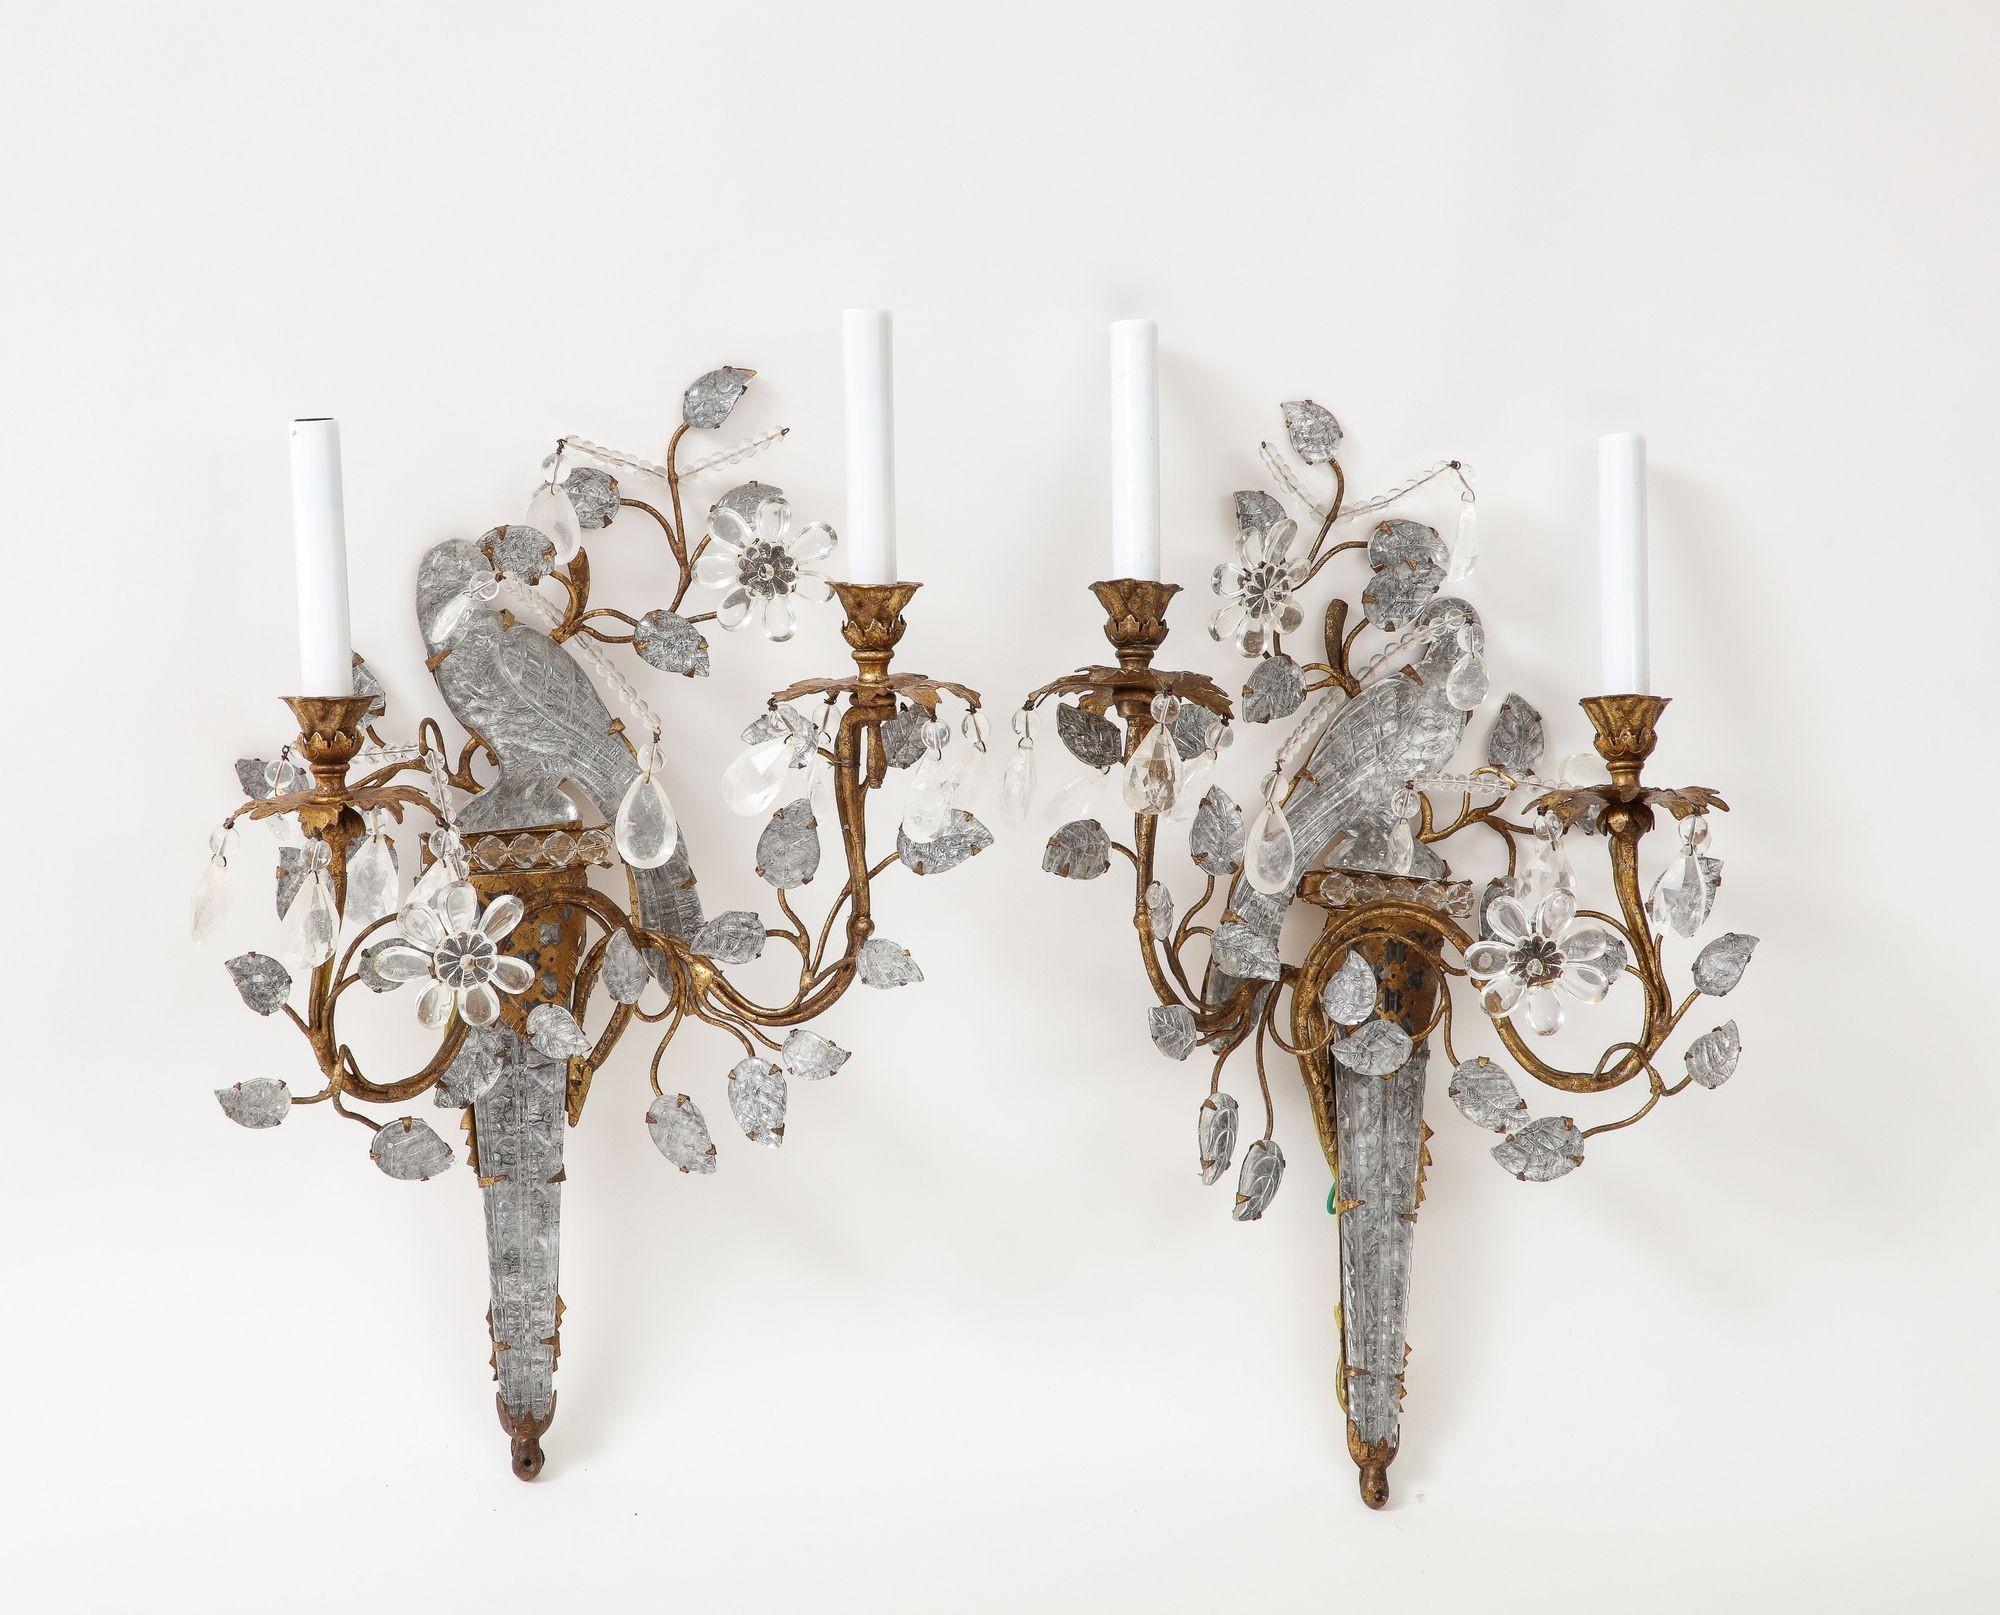 Vier große Bergkristall-Bagues Vogel-Bergkristall-Leuchter mit zweiarmigen Kerzen, die von blühenden Ranken getragen werden.